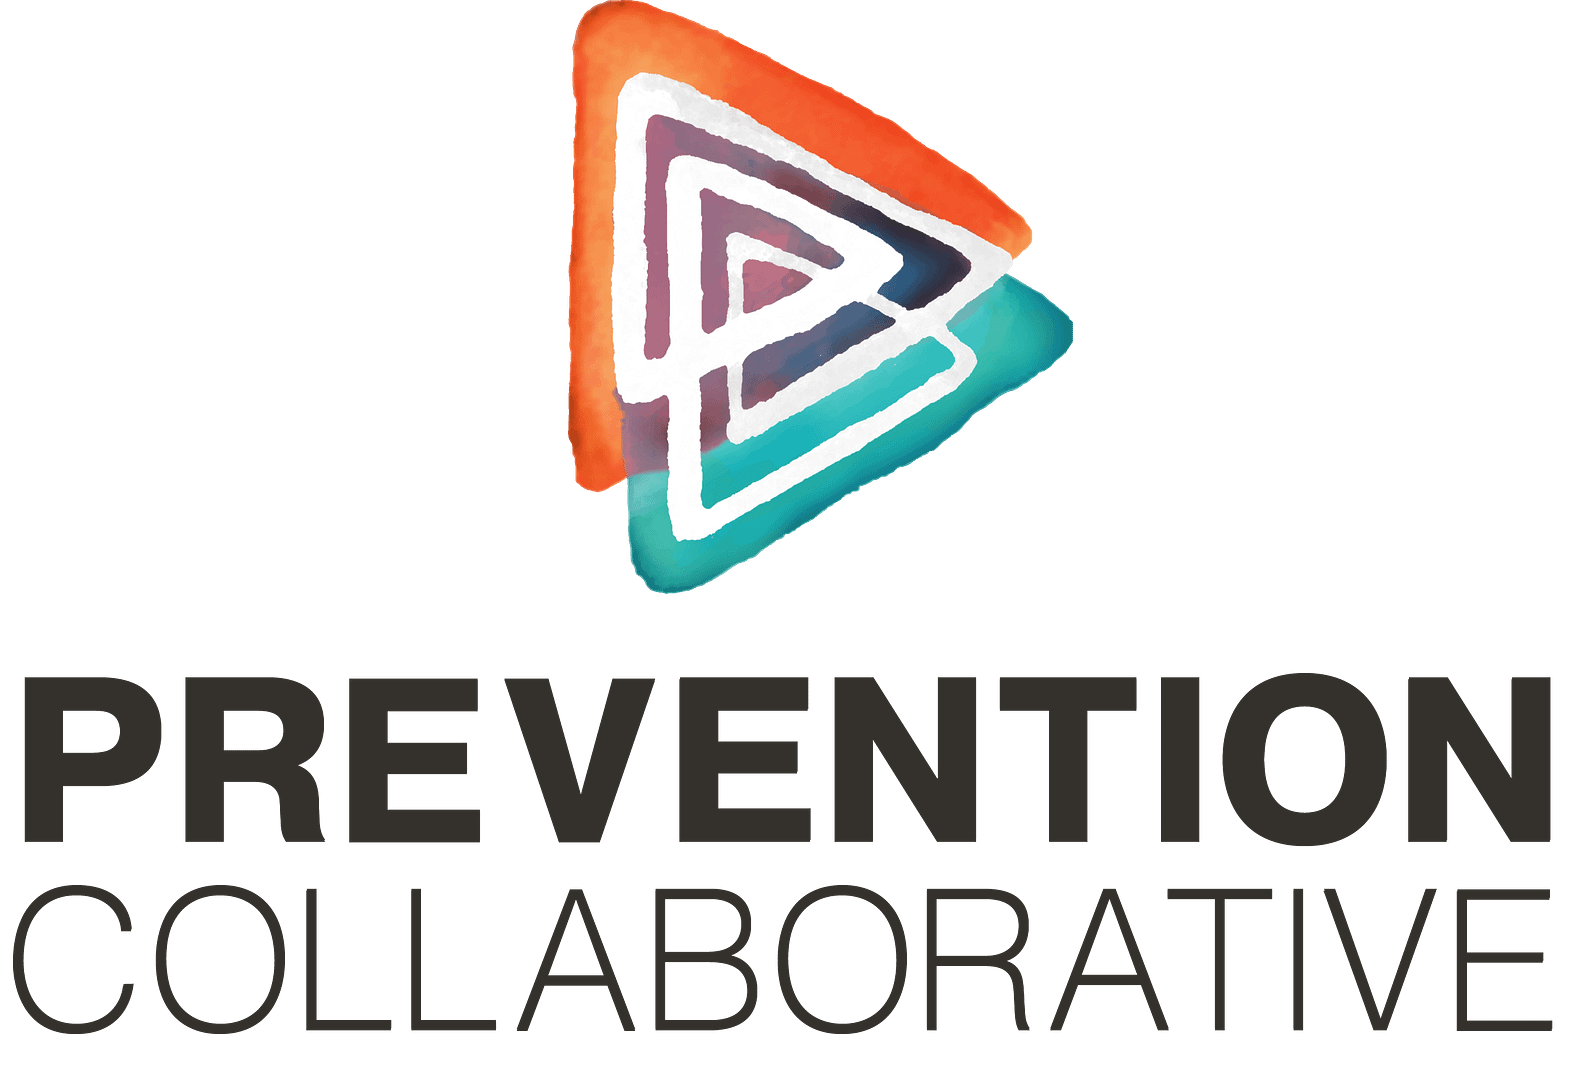 Prevention Collaborative logo